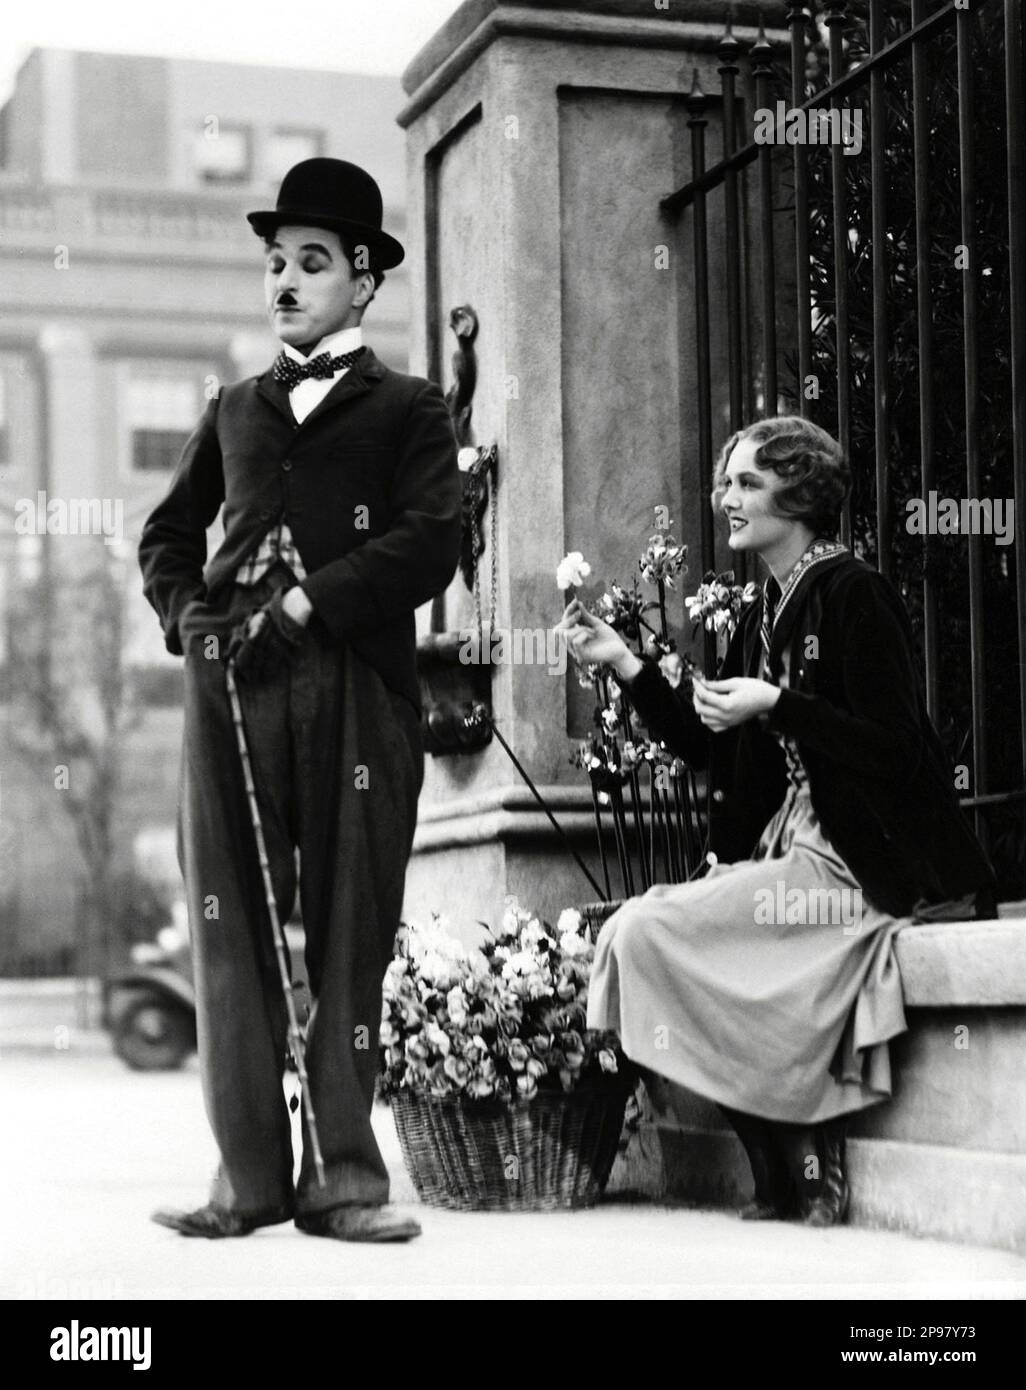 1931 : The silent movie actor and movie director CHARLES CHAPLIN ( 1889 - 1977 ) in CITY LIGHTS ( Luci della citta' ) with Virginia Cherrill - CINEMA MUTO  - FILM - candid - portrait - ritratto - regista cinematografico - attore - attrice - comico - fioraia - fleurist - fiorista - Charlot - bombetta - cappello - derby hat - flower - fiore - smile - sorriso - blind - cieca - cieco - ambulante ----   Archivio GBB      Archivio Stock Photo